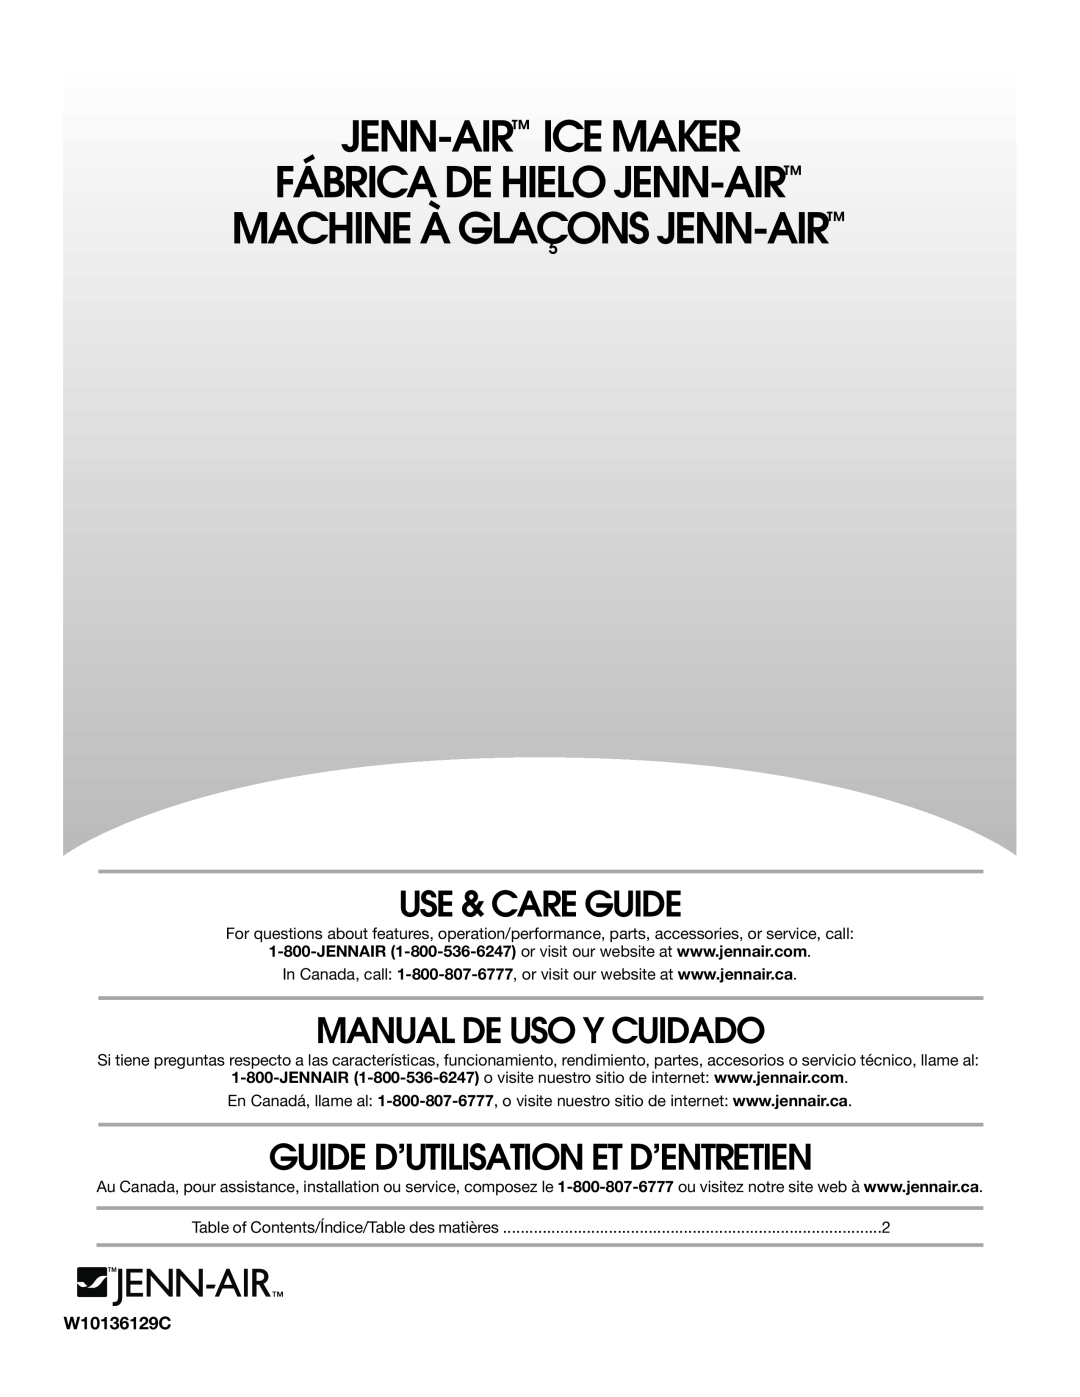 Jenn-Air W10136129C manual Use & Care Guide, Manual De Uso Y Cuidado, Guide D’Utilisation Et D’Entretien 